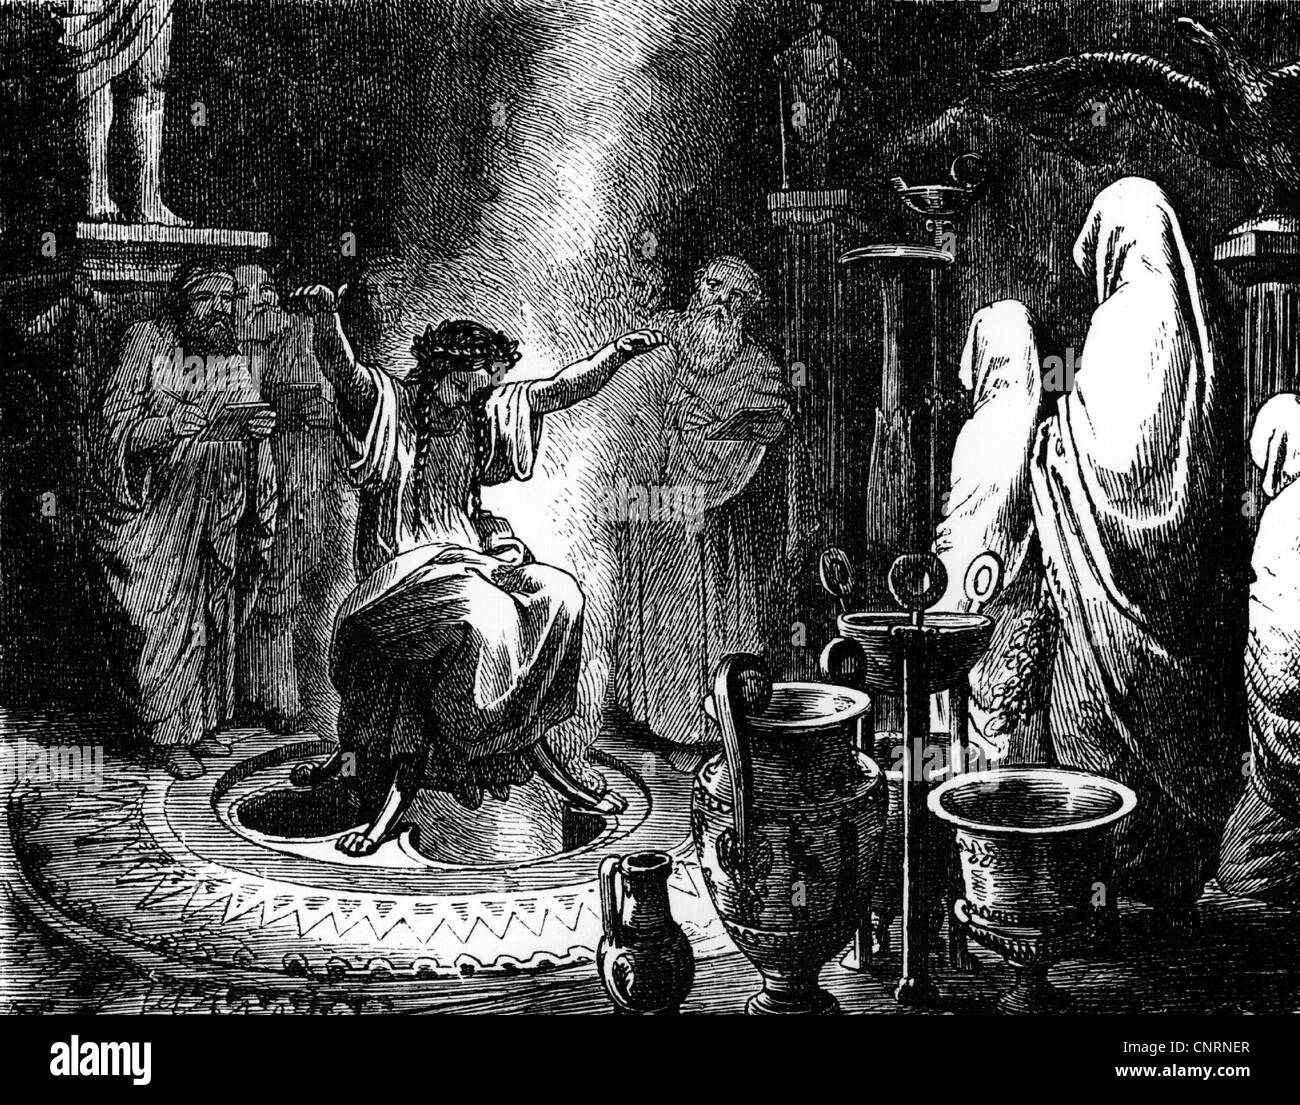 Monde antique, Grèce, religion, Delphique Sibyl, la prêtresse Pythia faisant ses prophéties, assis dans un chaudron sur un trépied, droits additionnels-Clearences-non disponible Banque D'Images